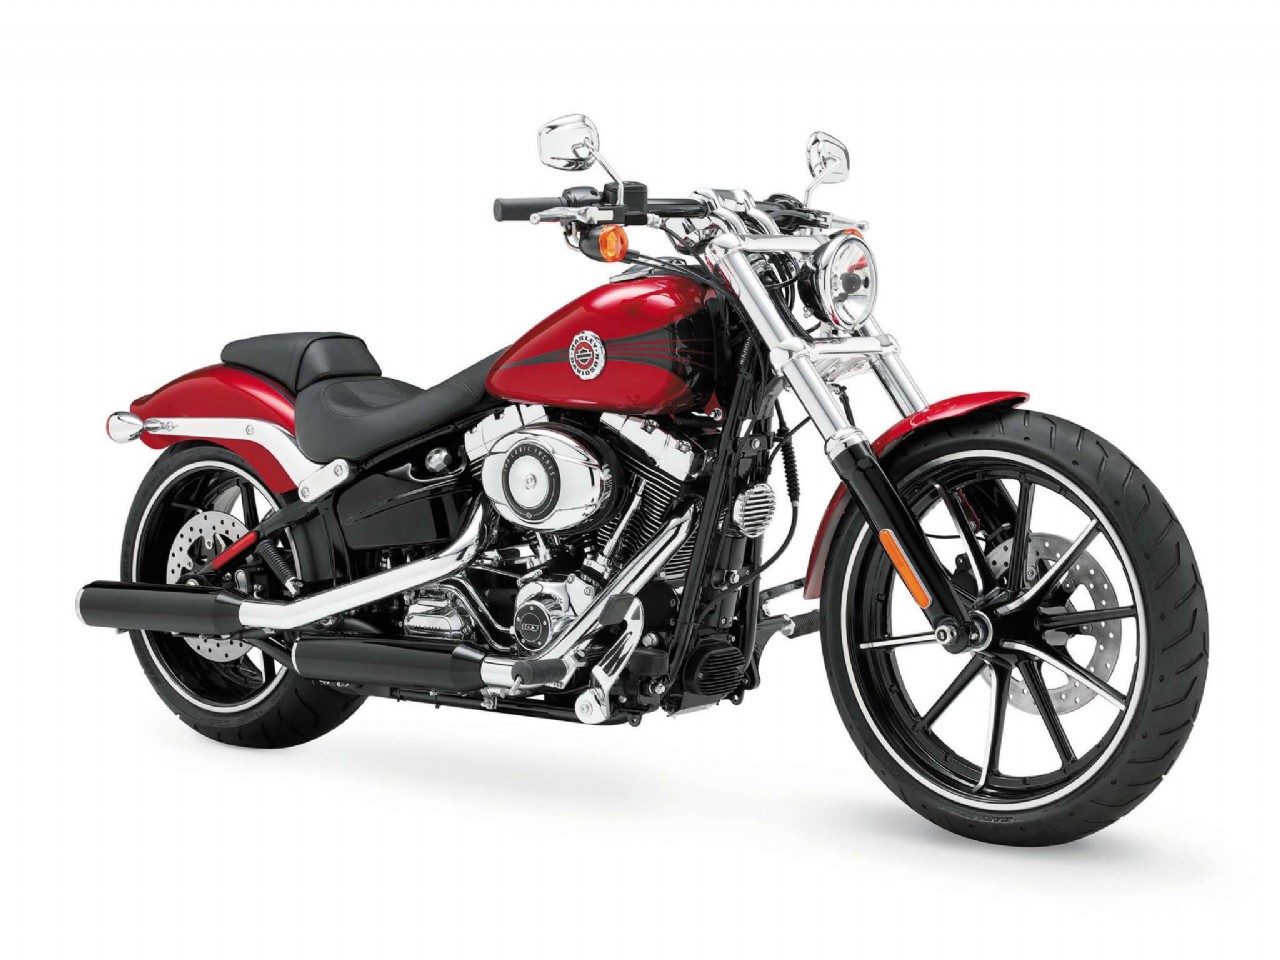 2013 Harley-Davidson Motorcycle Models at Total Motorcycle